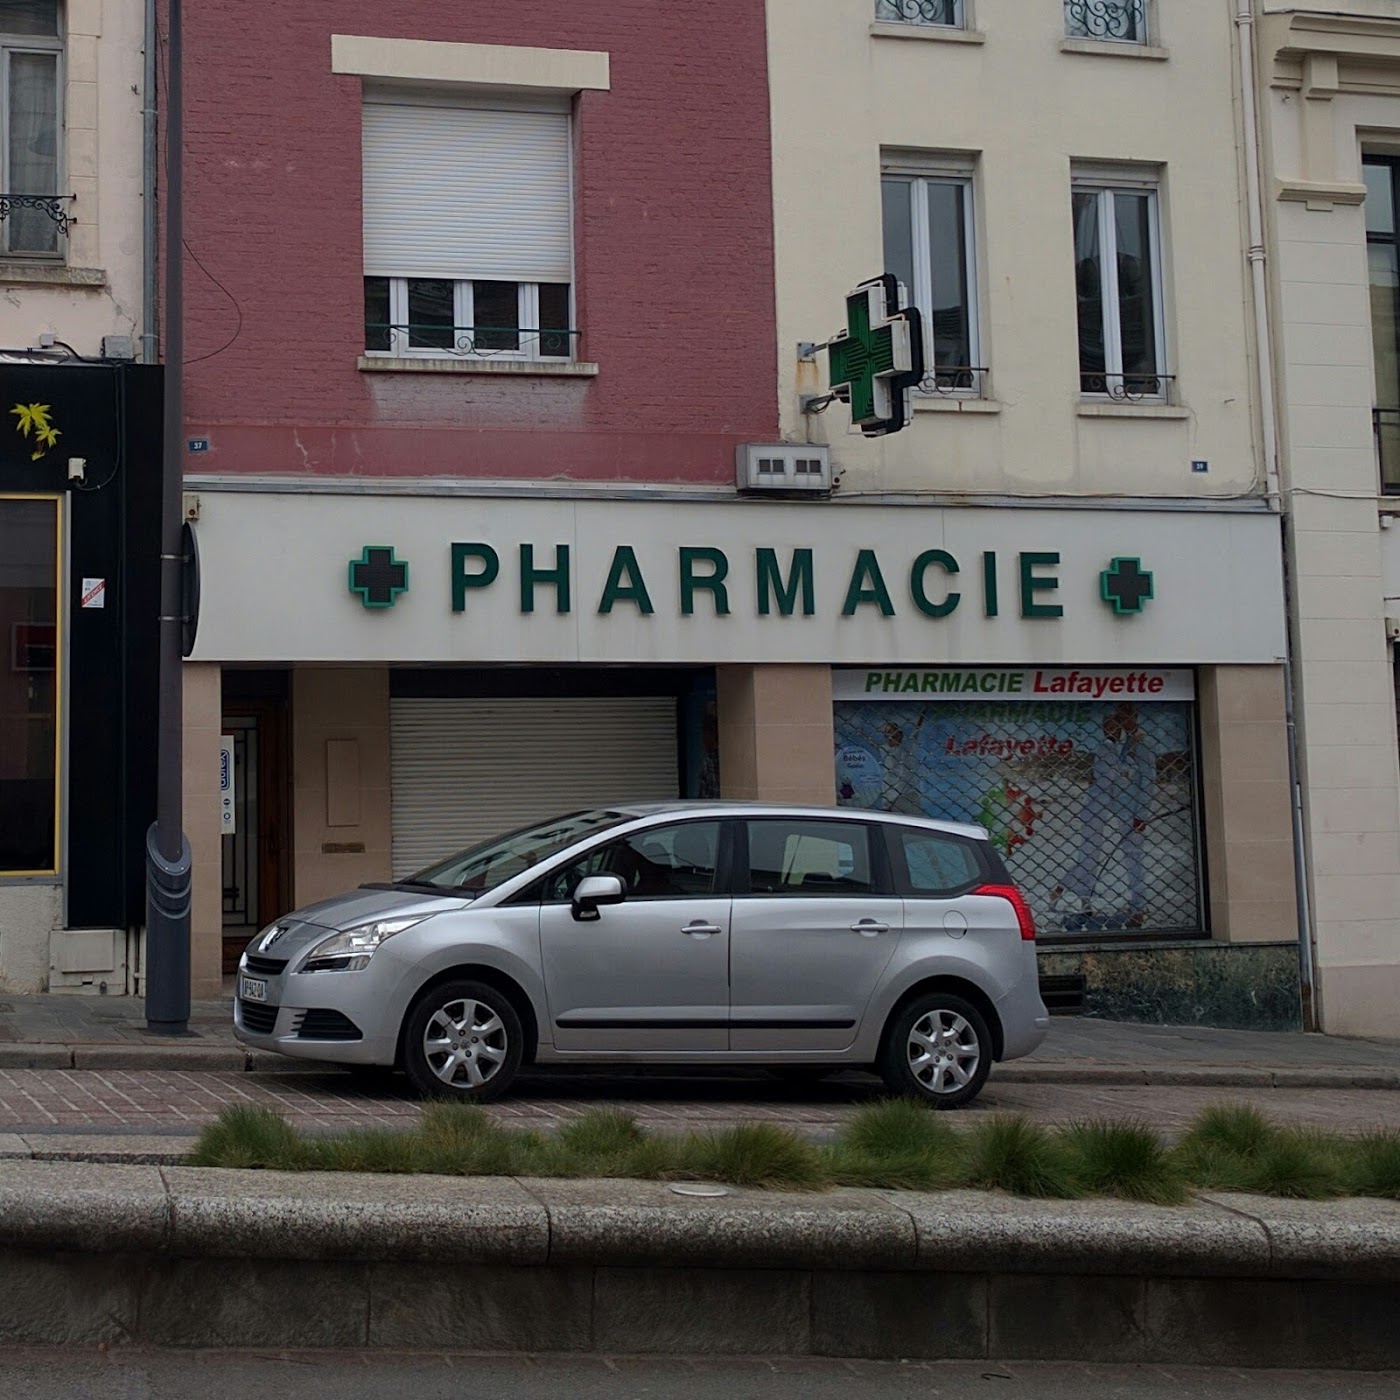 Pharmacie 3B